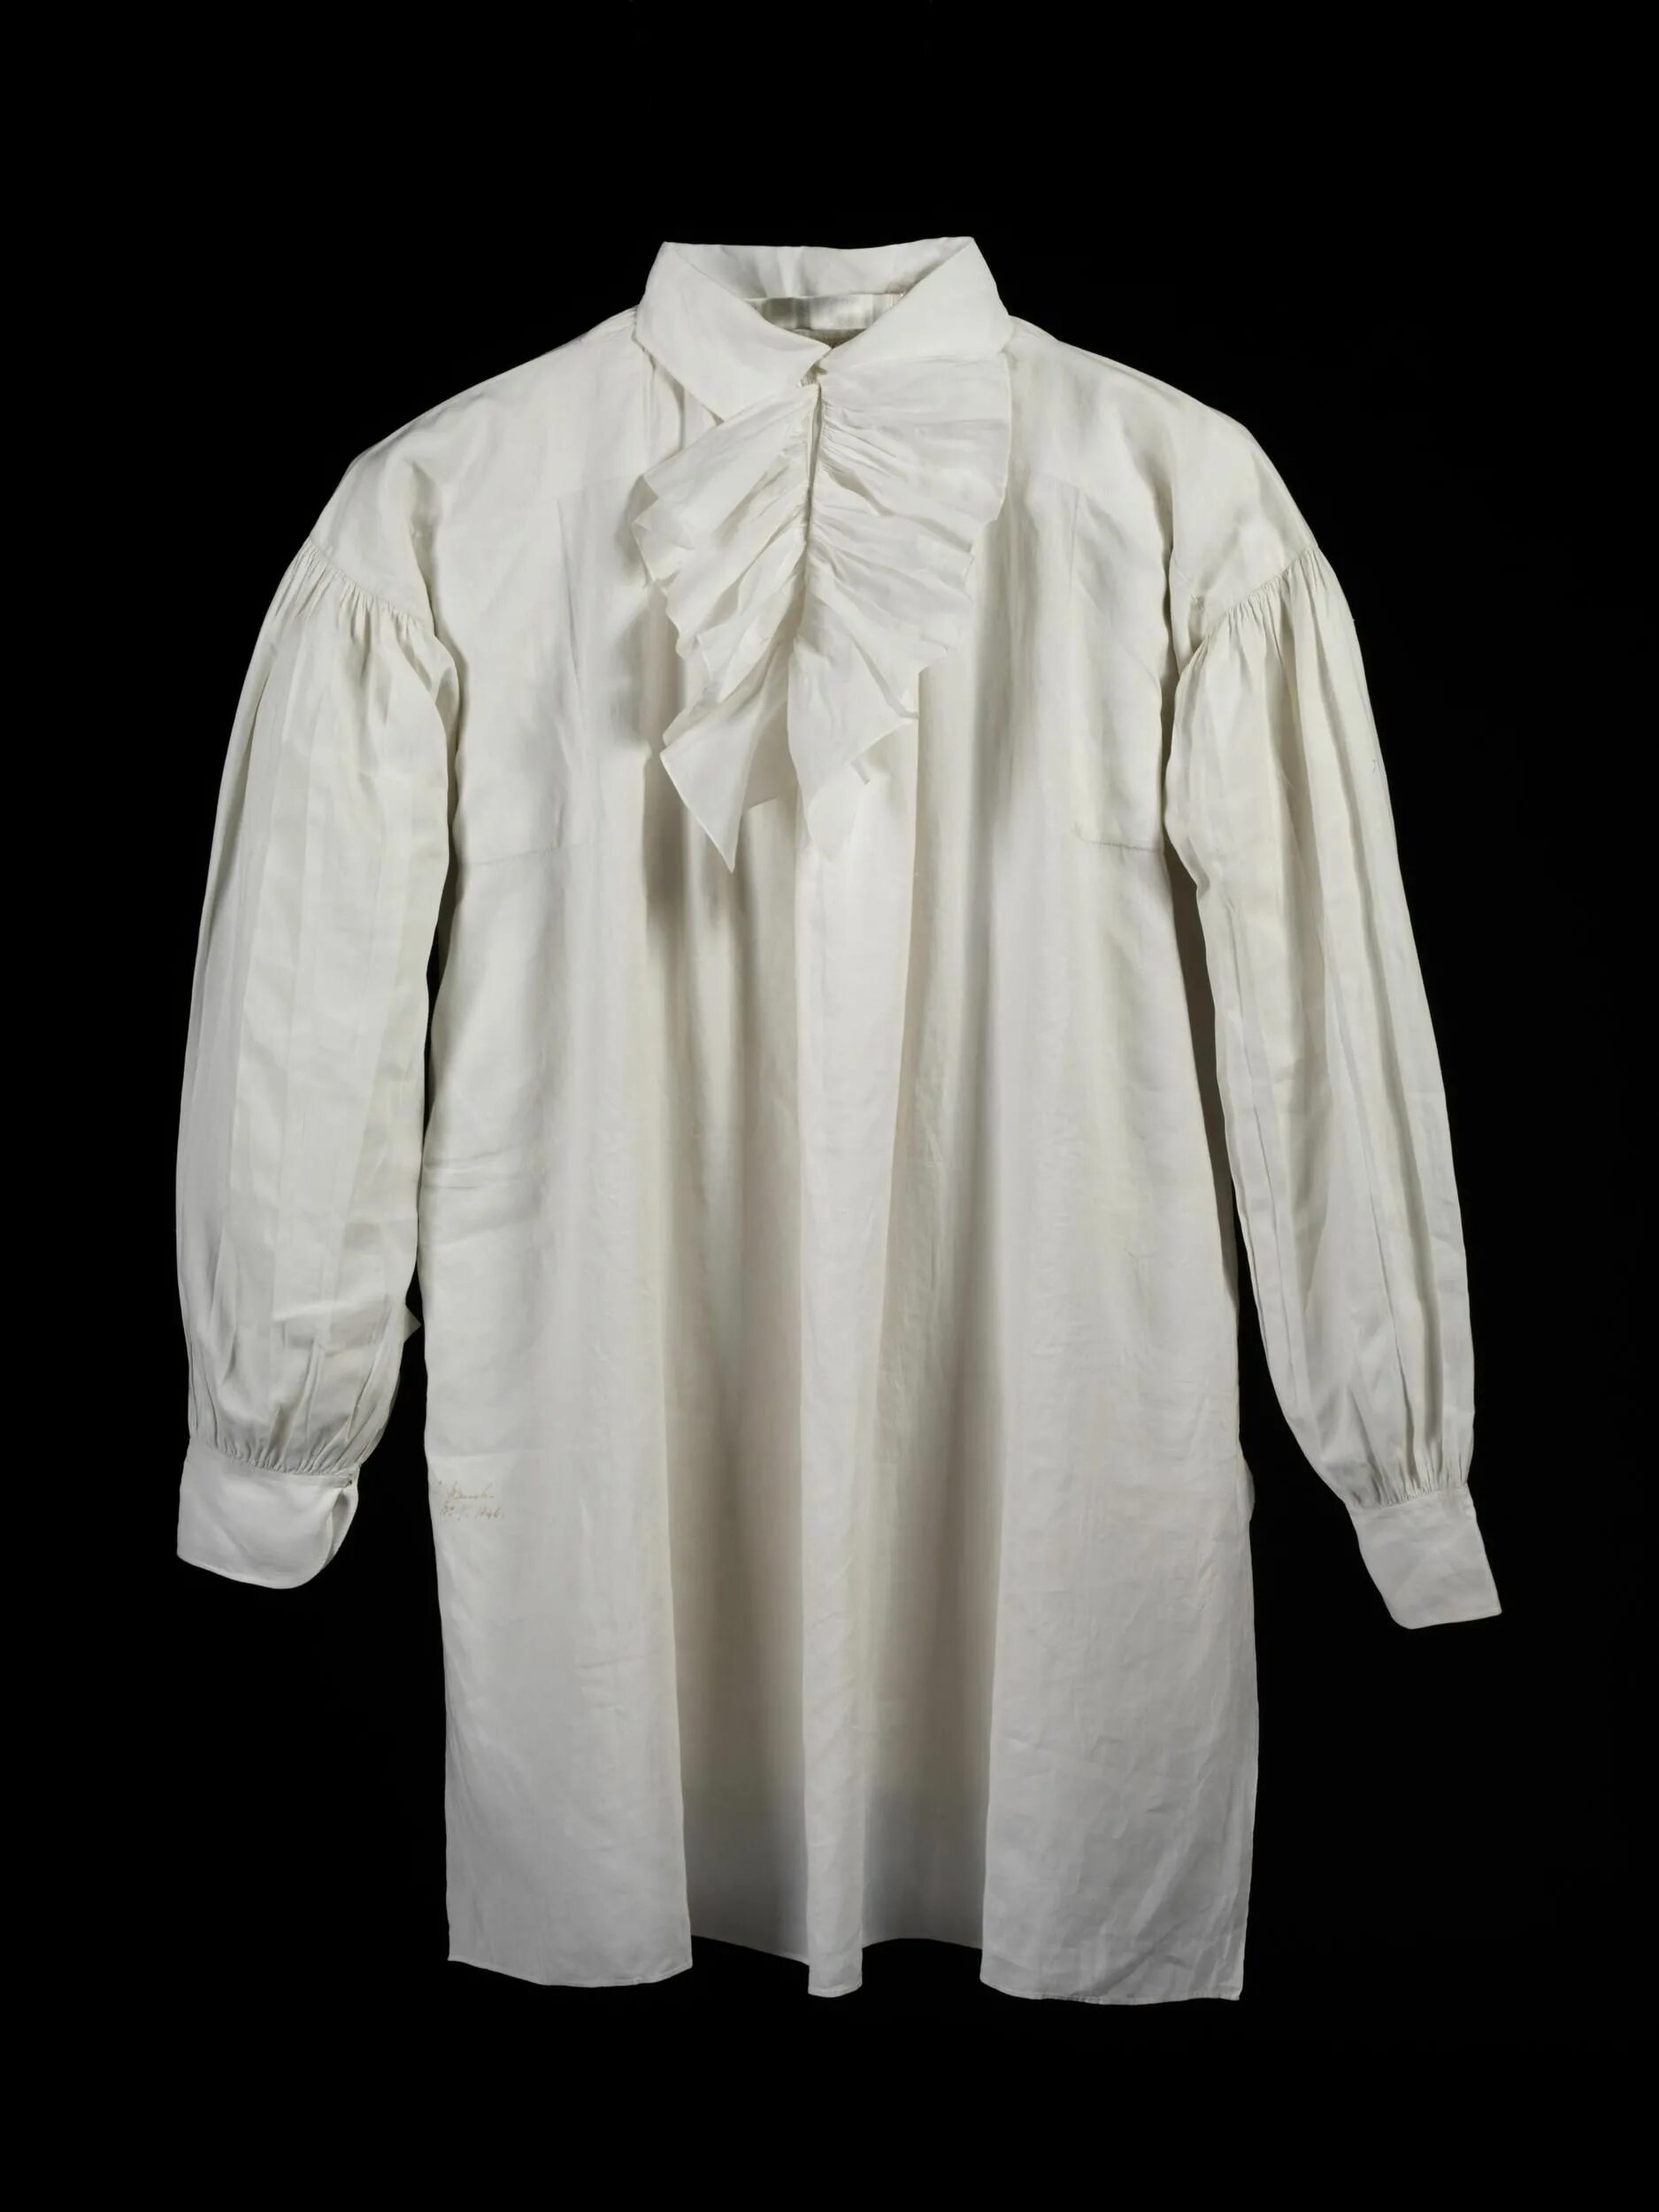 Старая мужская рубашка. Рубаха 17 века мужская. Рубаха 16 века мужская. Рубашка апаш мужская 19 век. Рубашка батистовая мужская 18 век.